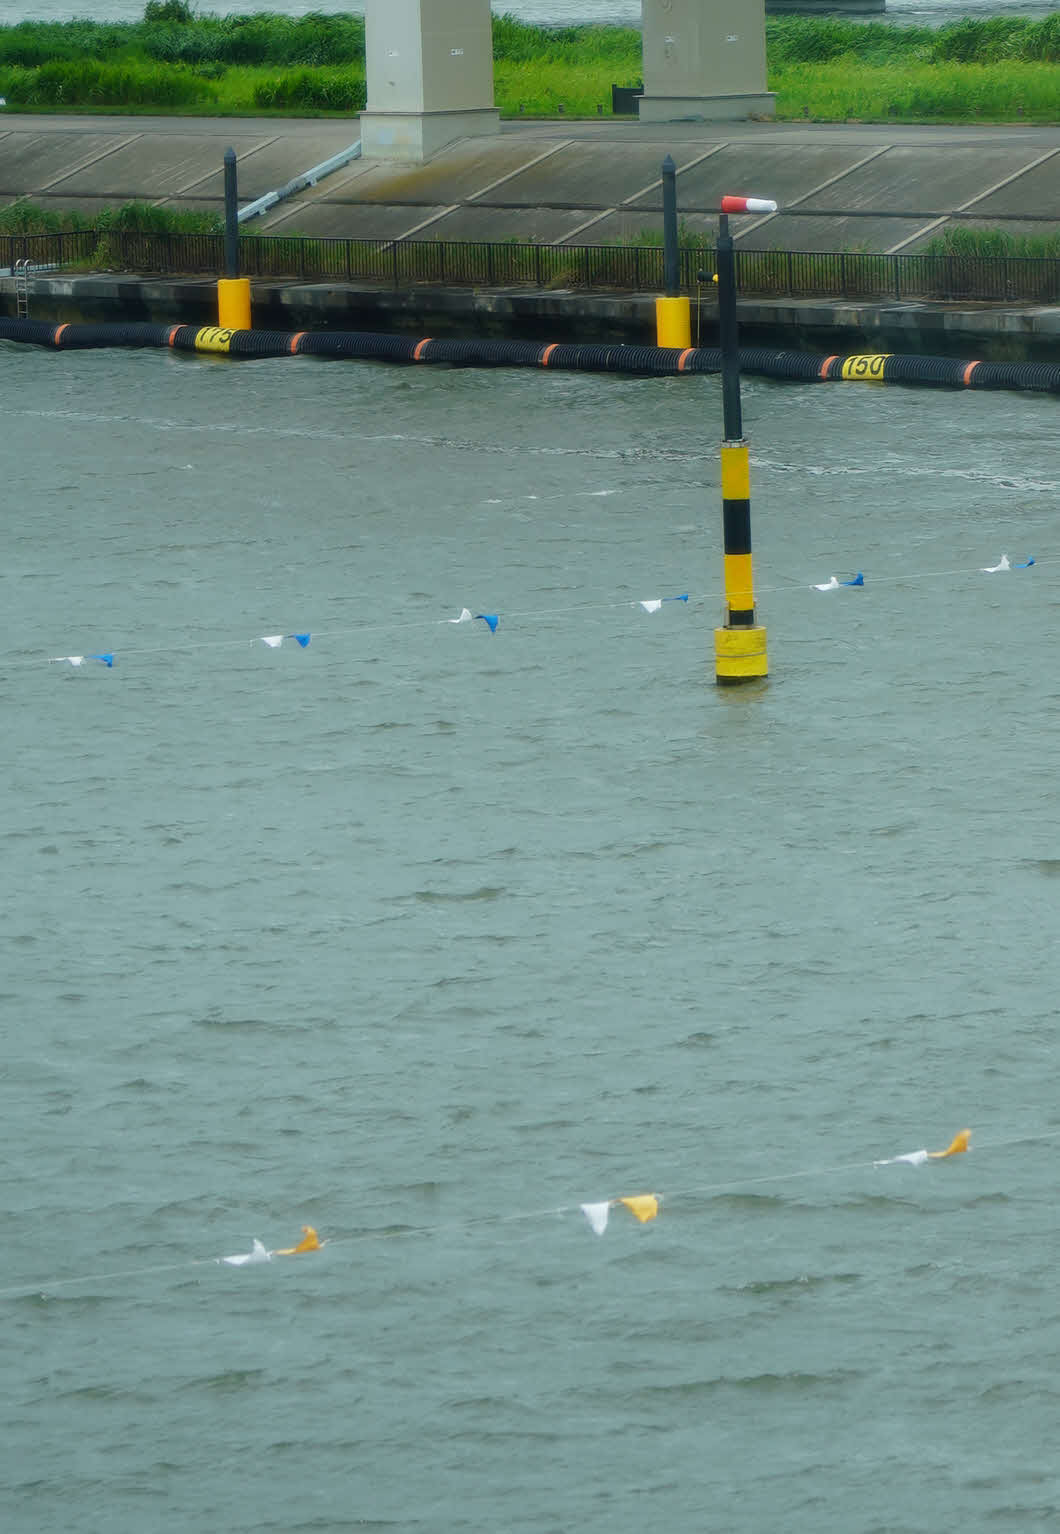 中止順延された江戸川ボートでは吹き流しが強風で大きく流されていた